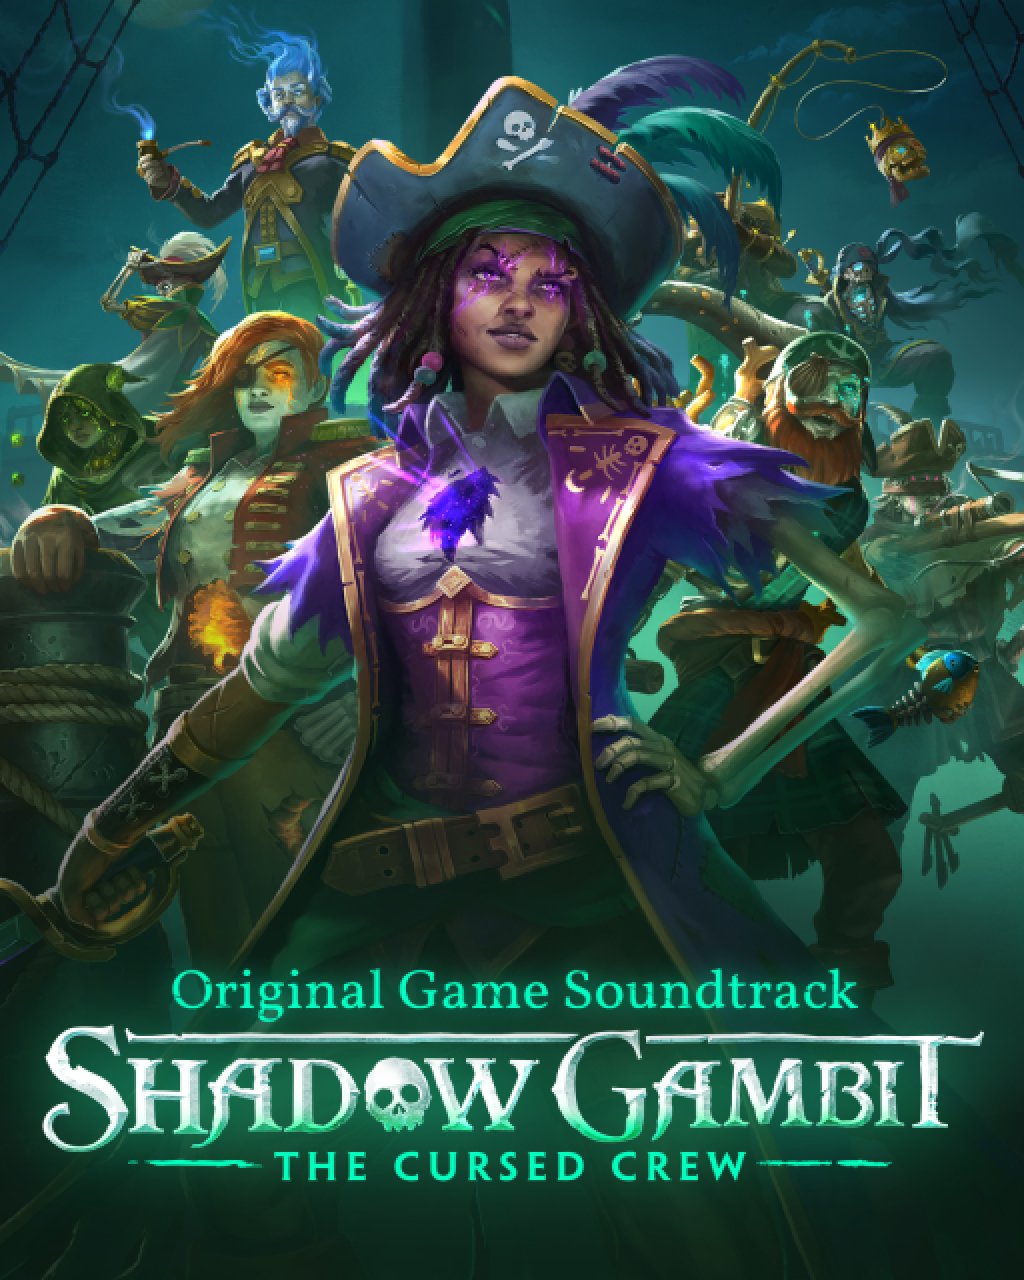 ESD Shadow Gambit The Cursed Crew Original Soundtr